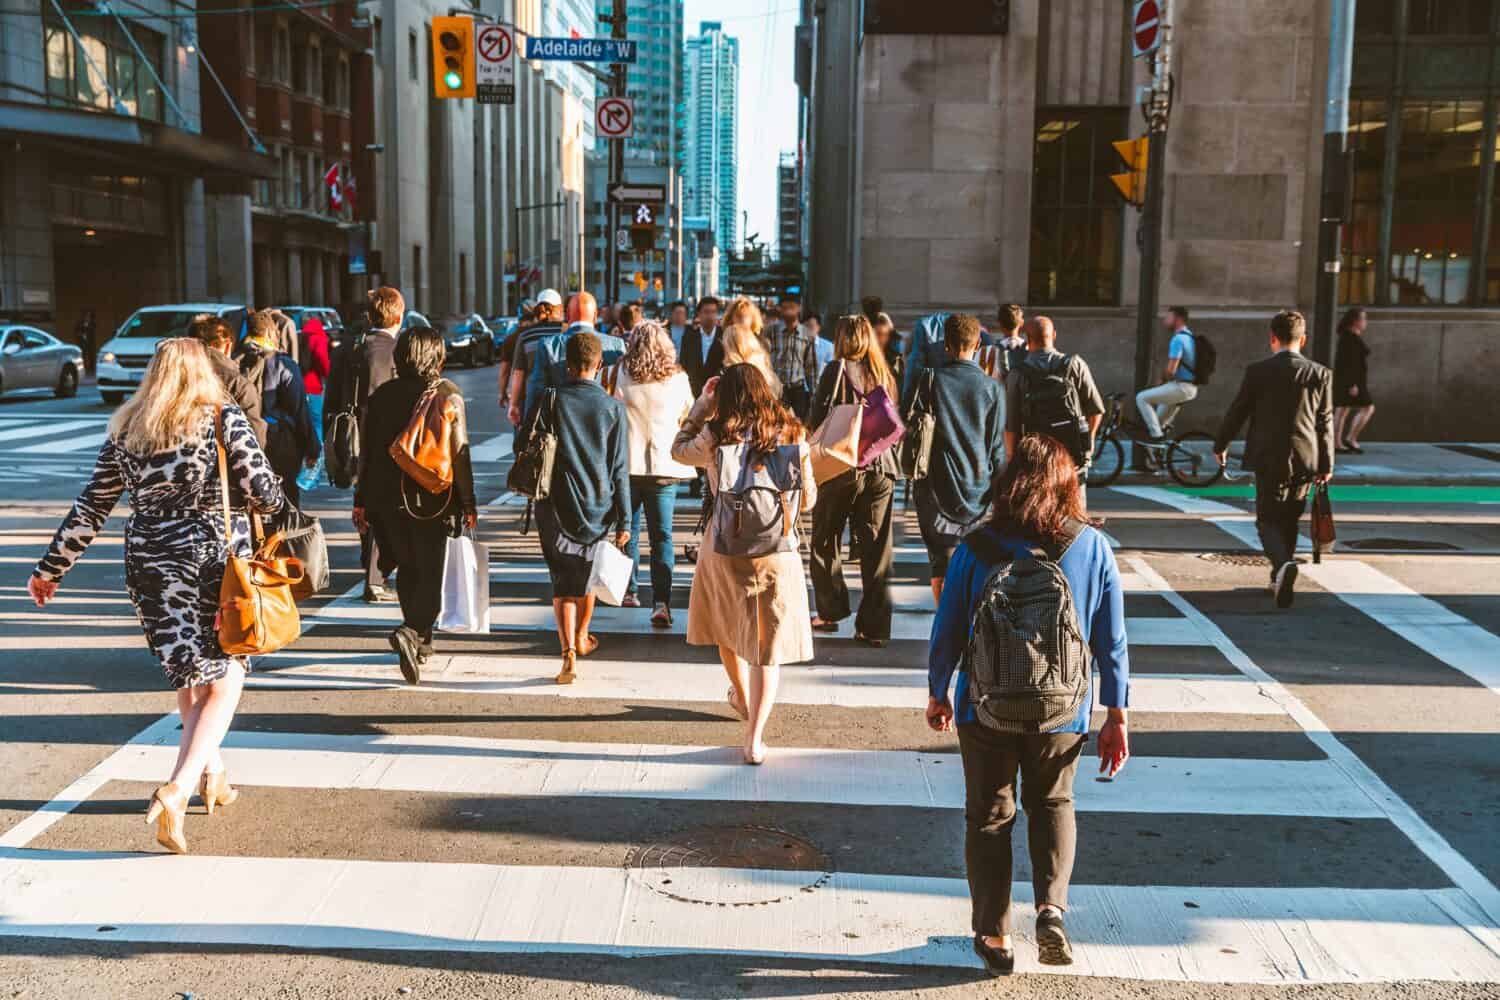 Folla di persone irriconoscibili che attraversano la strada sulla zebra del semaforo nella città di Toronto all'ora di punta - Stile di vita in una grande città del Nord America